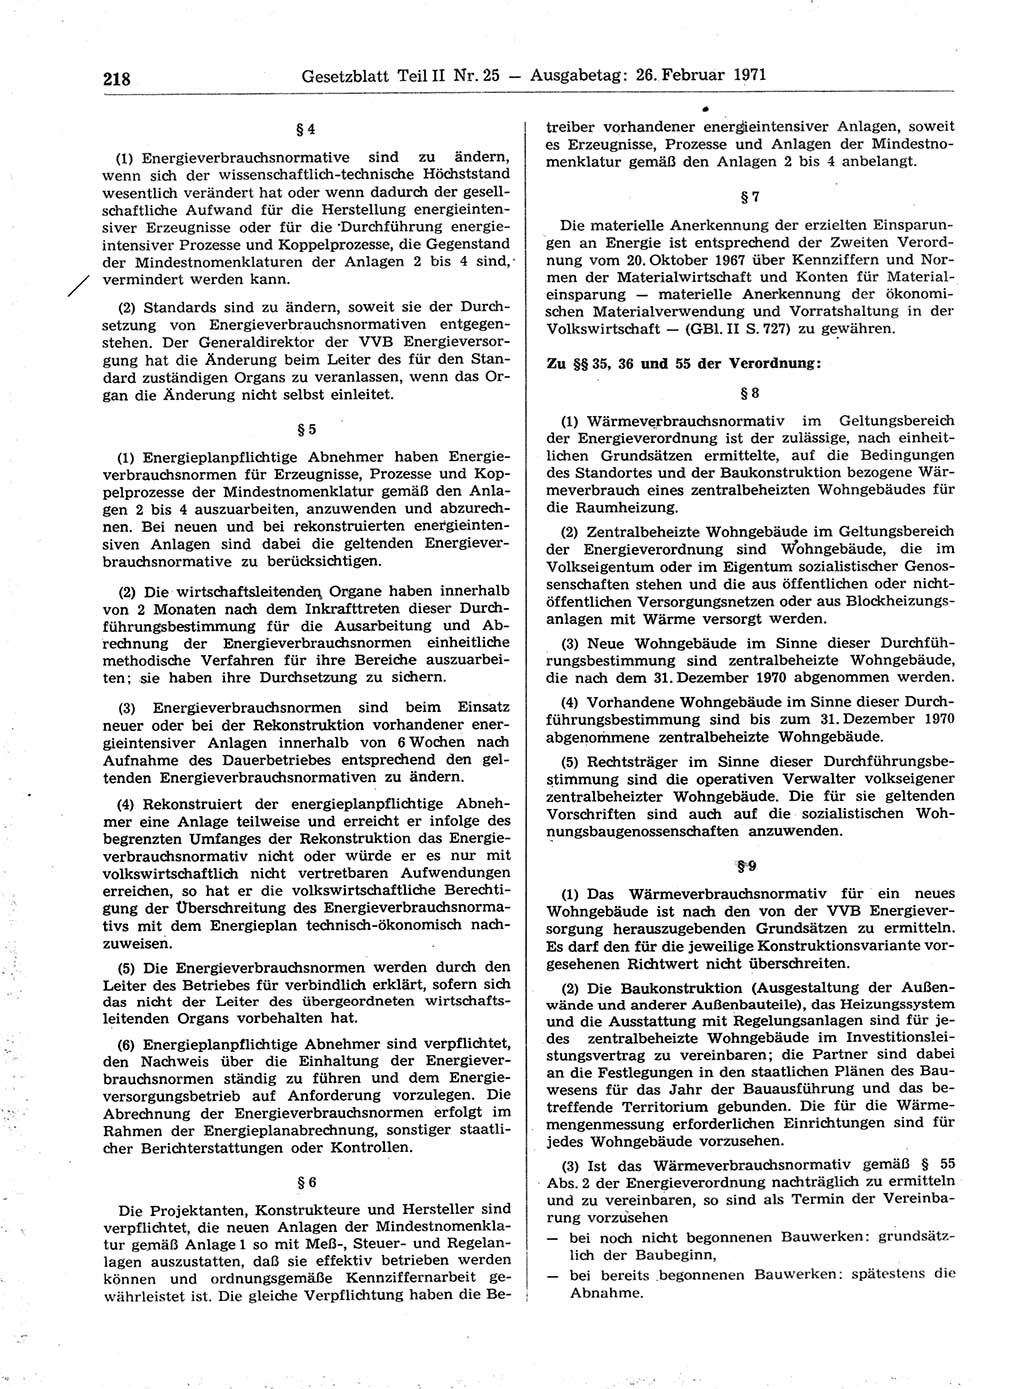 Gesetzblatt (GBl.) der Deutschen Demokratischen Republik (DDR) Teil ⅠⅠ 1971, Seite 218 (GBl. DDR ⅠⅠ 1971, S. 218)